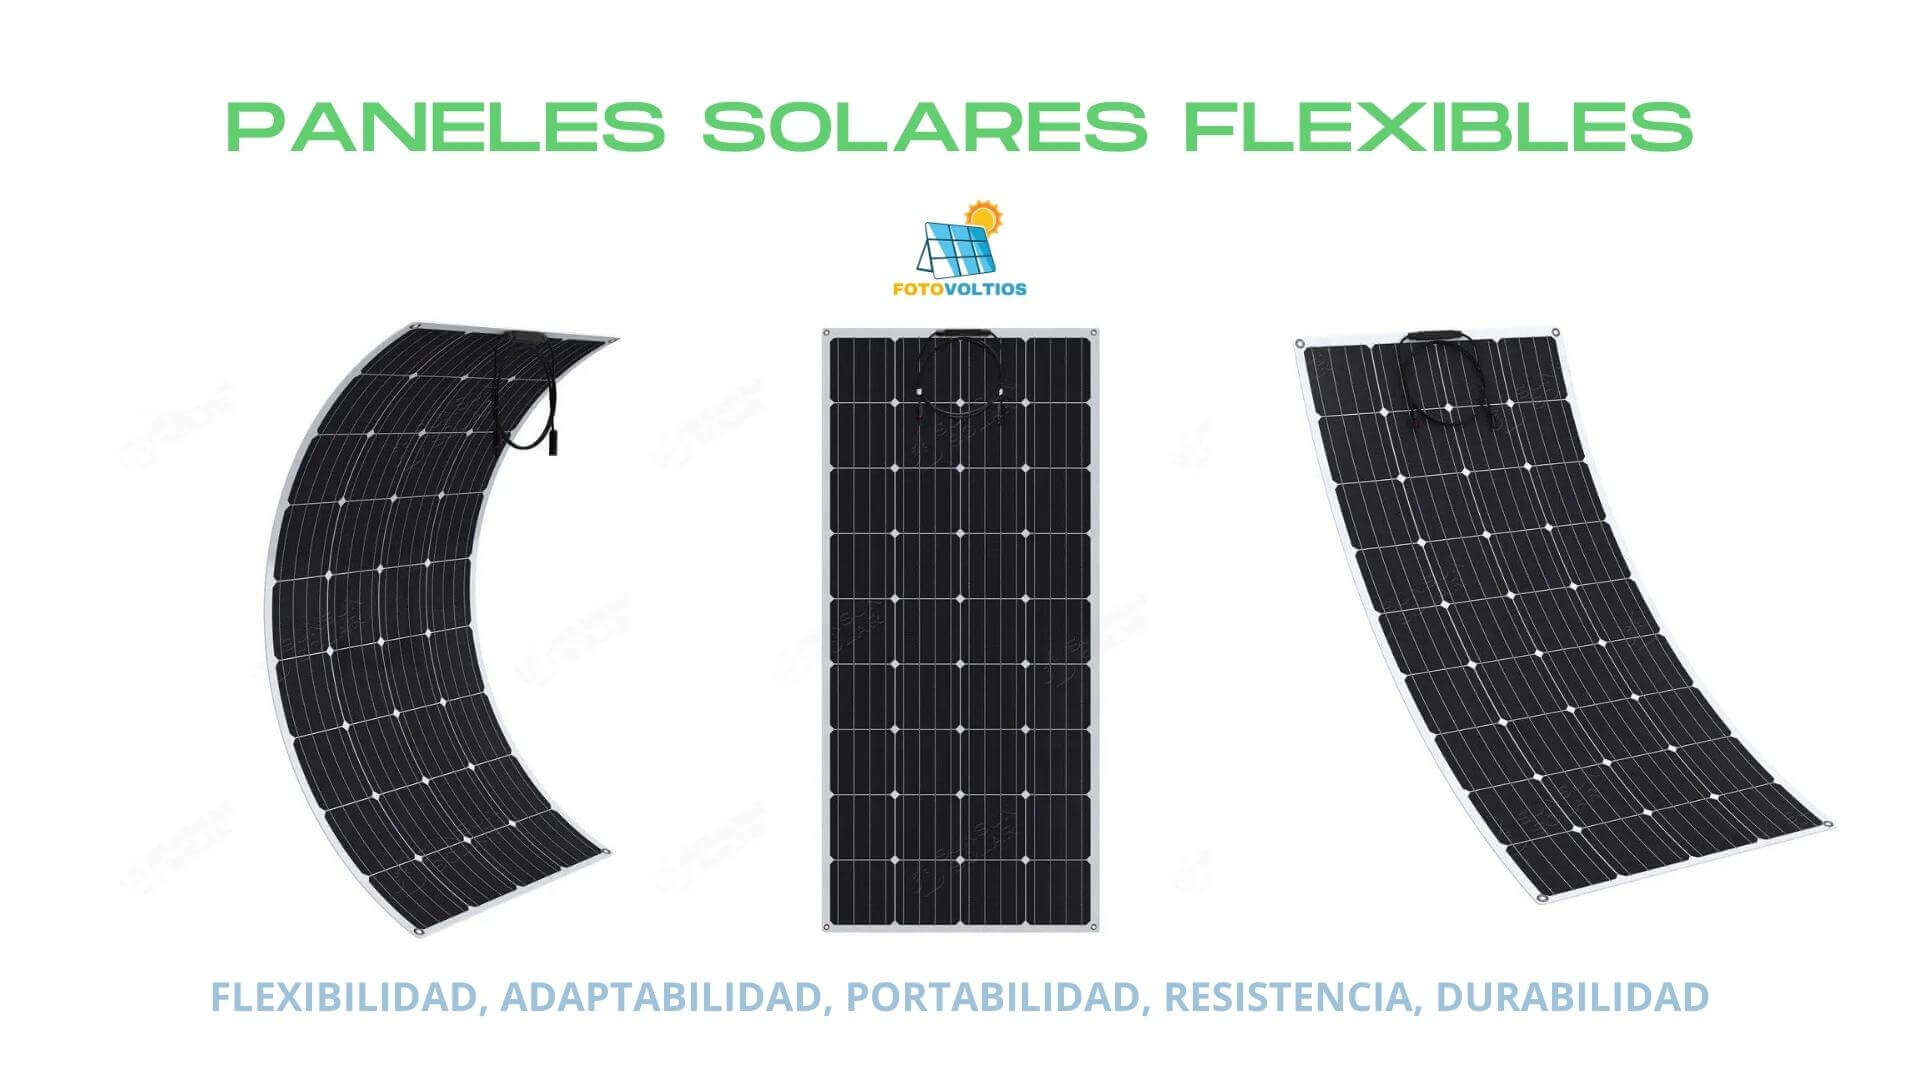 Paneles solares flexibles ¿Qué son y cuáles son sus beneficios?